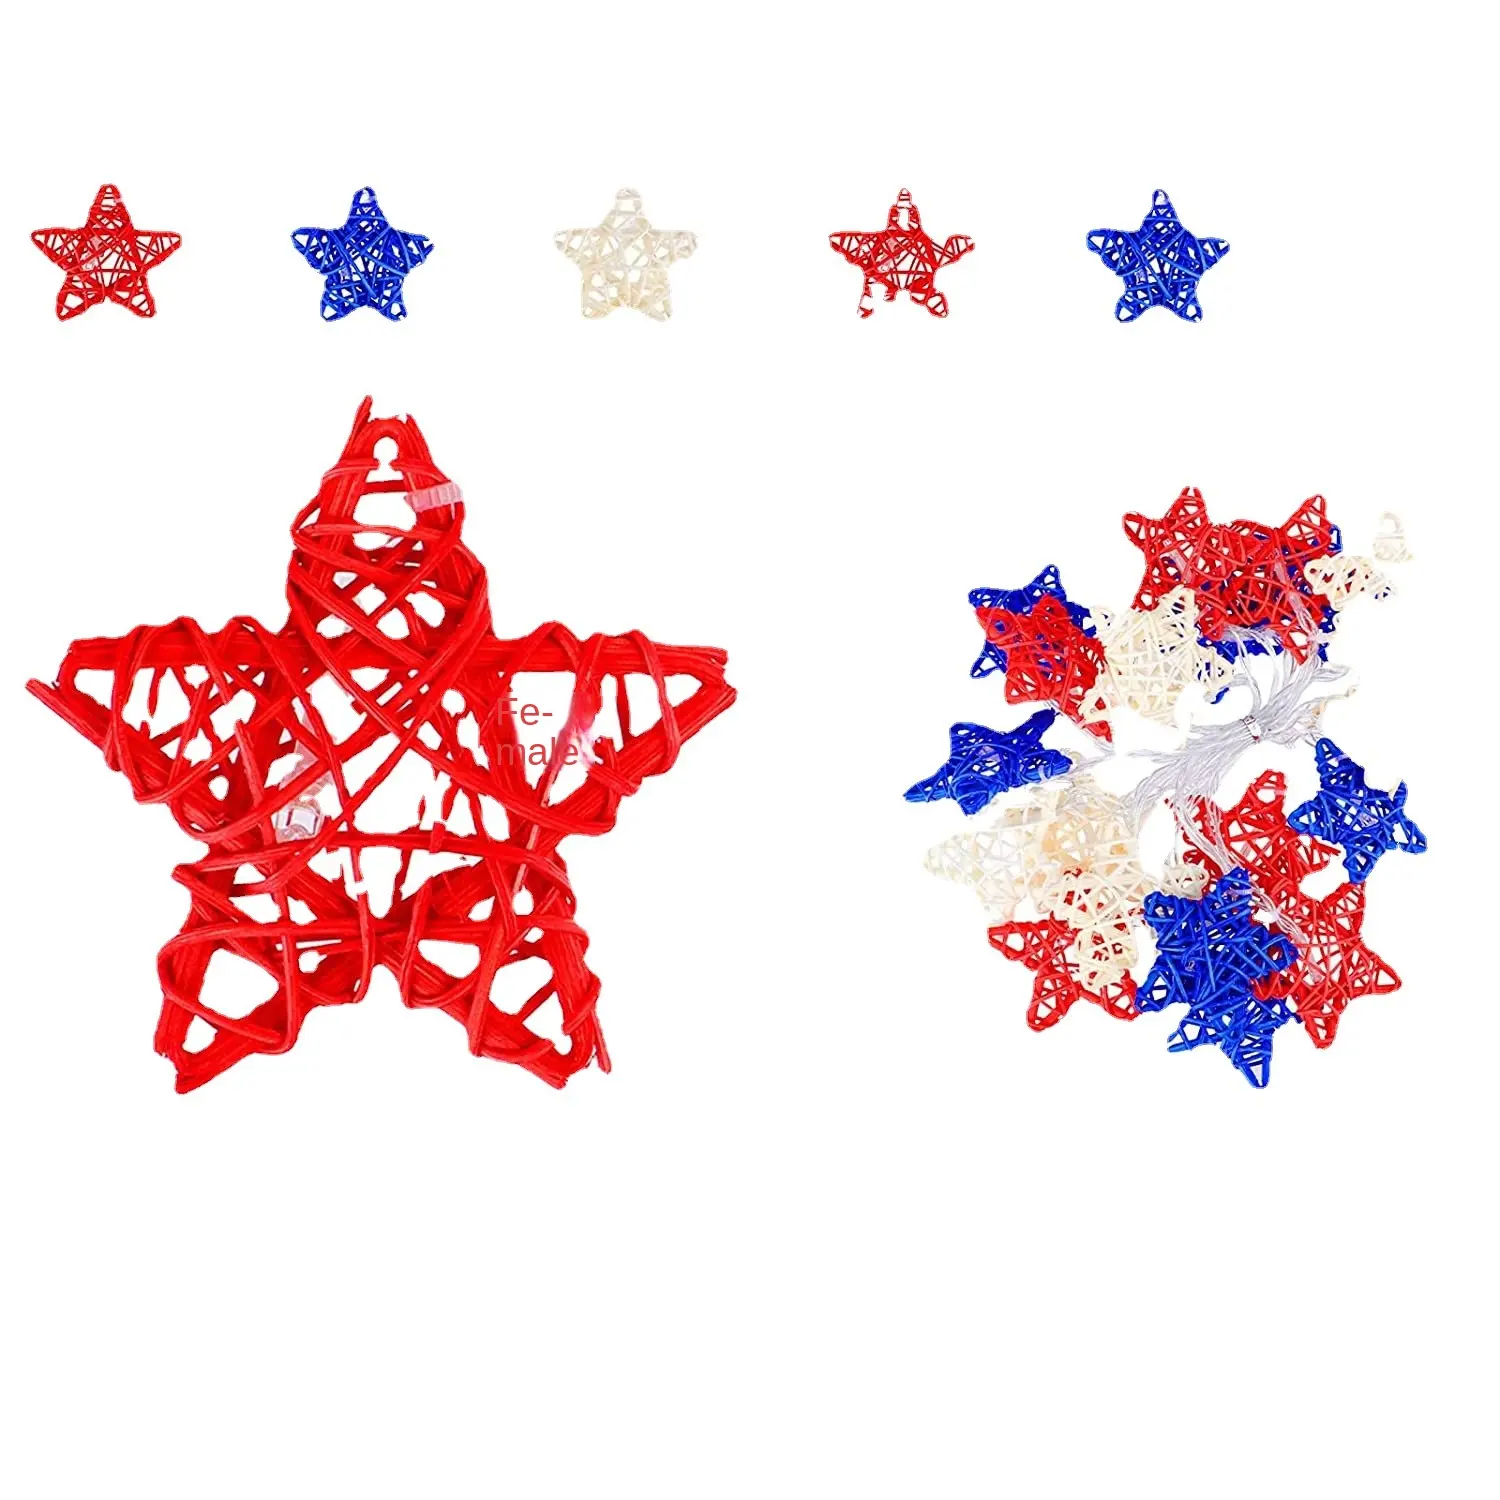 نجوم راتان خماسية الأضلاع ديكور أضواء ليد للاحتفال بالاستقلال سلسلة كرة راتان حمراء وبيضاء وزرقاء للكريسماس